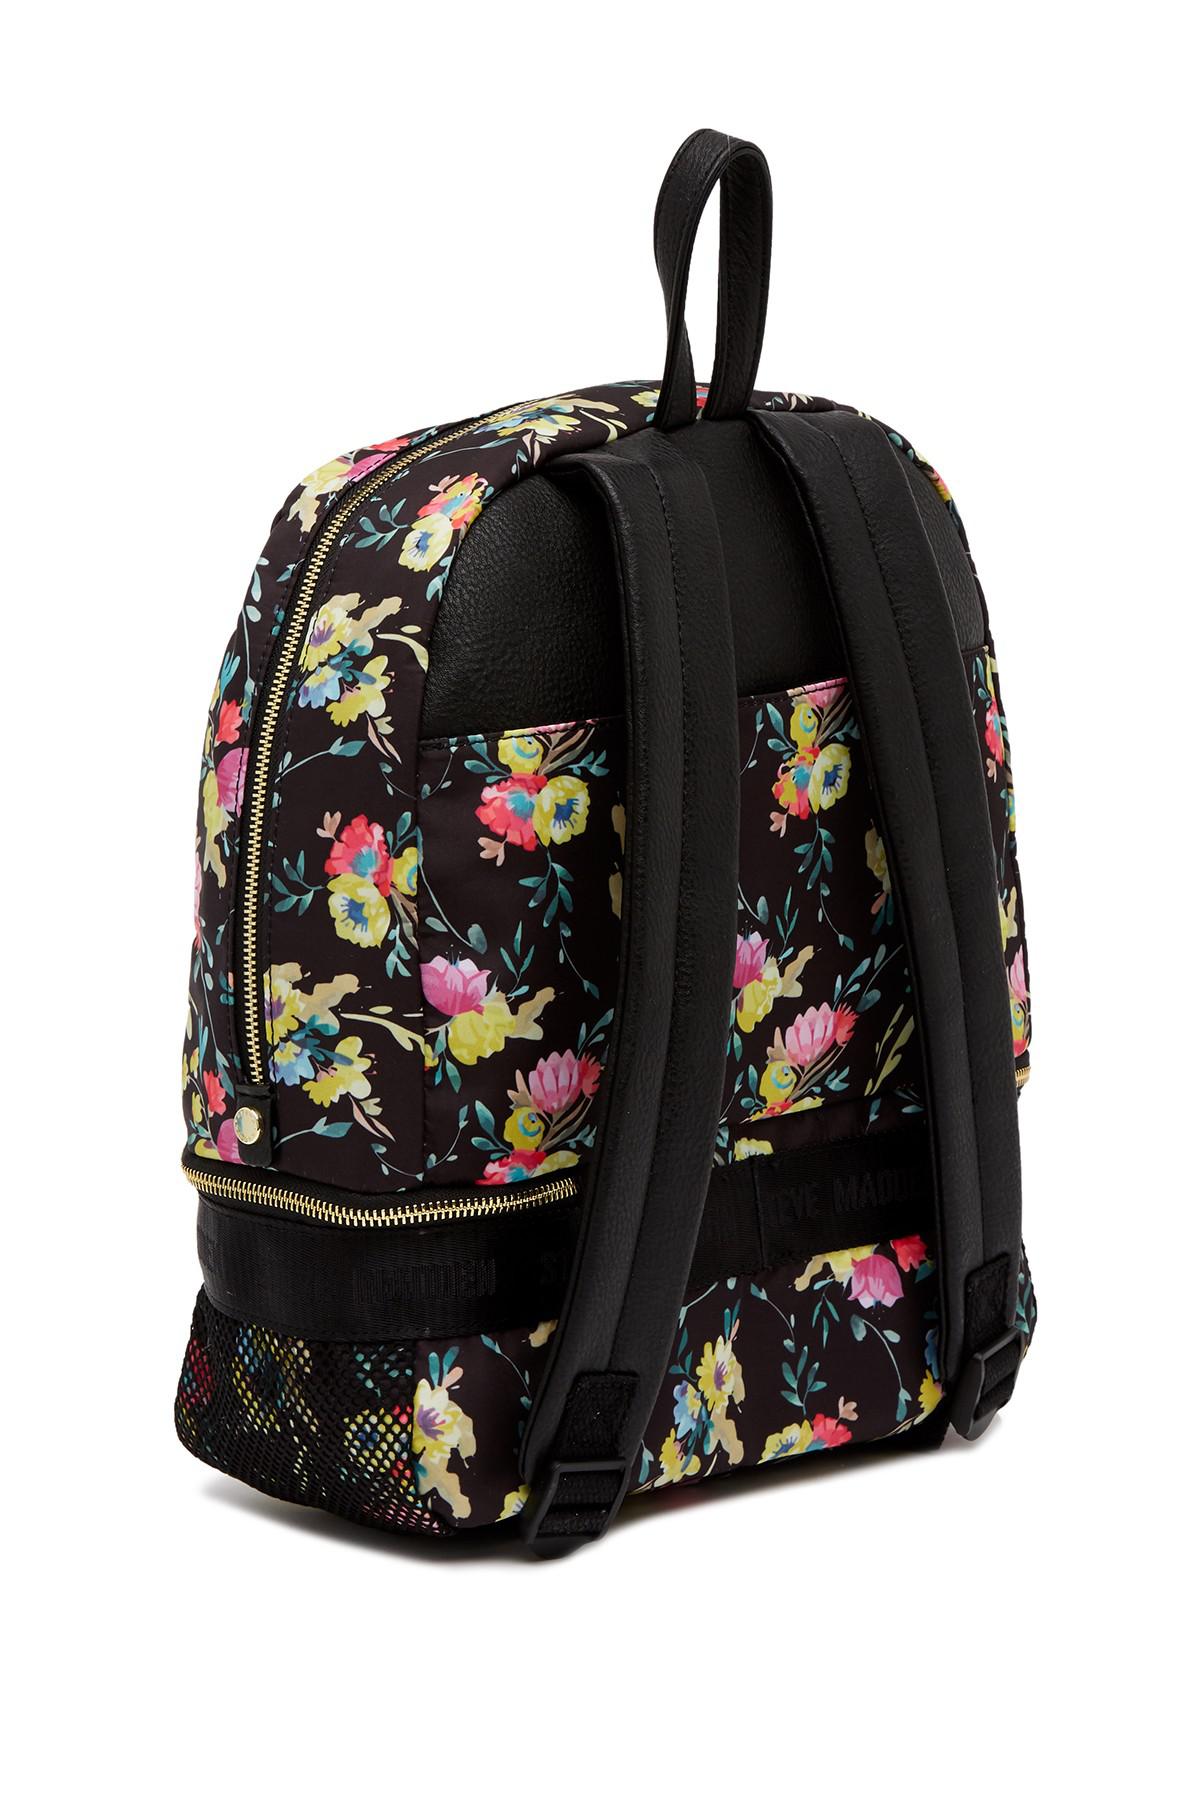 Steve Madden Floral & Mesh Backpack in Black | Lyst